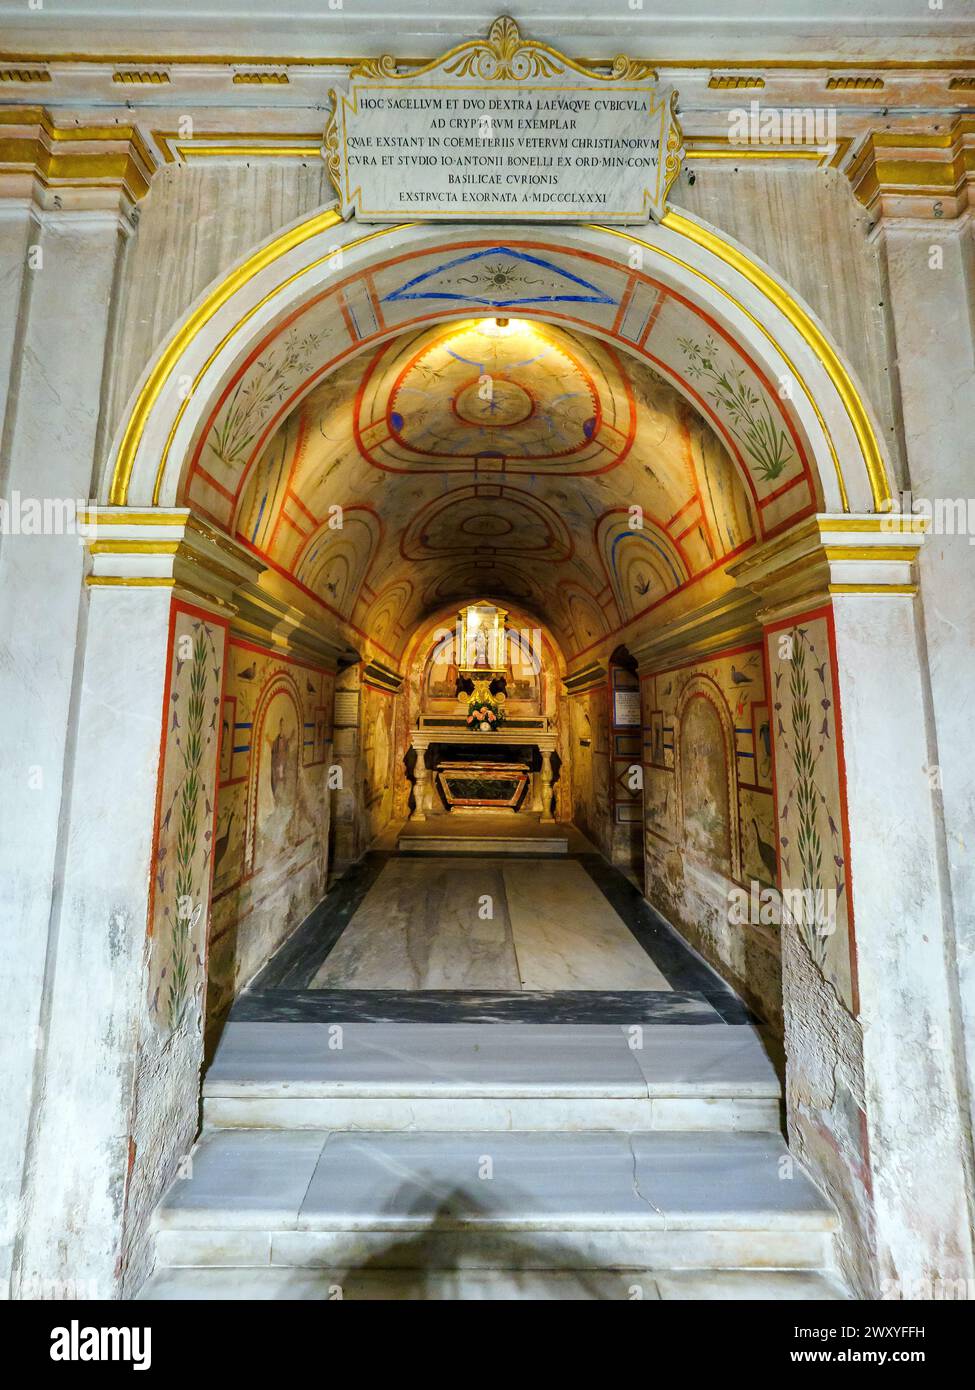 Die gewaltige Krypta unter dem Hauptaltar, die von Luigi Carimini 1869-71 erbaut wurde und neben den Überresten der Titularapostel Philipp und Jakobus auch die Reliquien verschiedener anderer Märtyrer, die bei diesen Ausgrabungen ans Licht kamen, vereint. und die Gräber von zwei Riario, die einst das Recht hatten, im Presbyterium zu begraben. Die Tempera-Dekoration des Ambulatoriums ist von den Katakomben von San Callisto und Domitilla inspiriert. - Basilica dei Santi XII Apostoli - Rom Italien Stockfoto